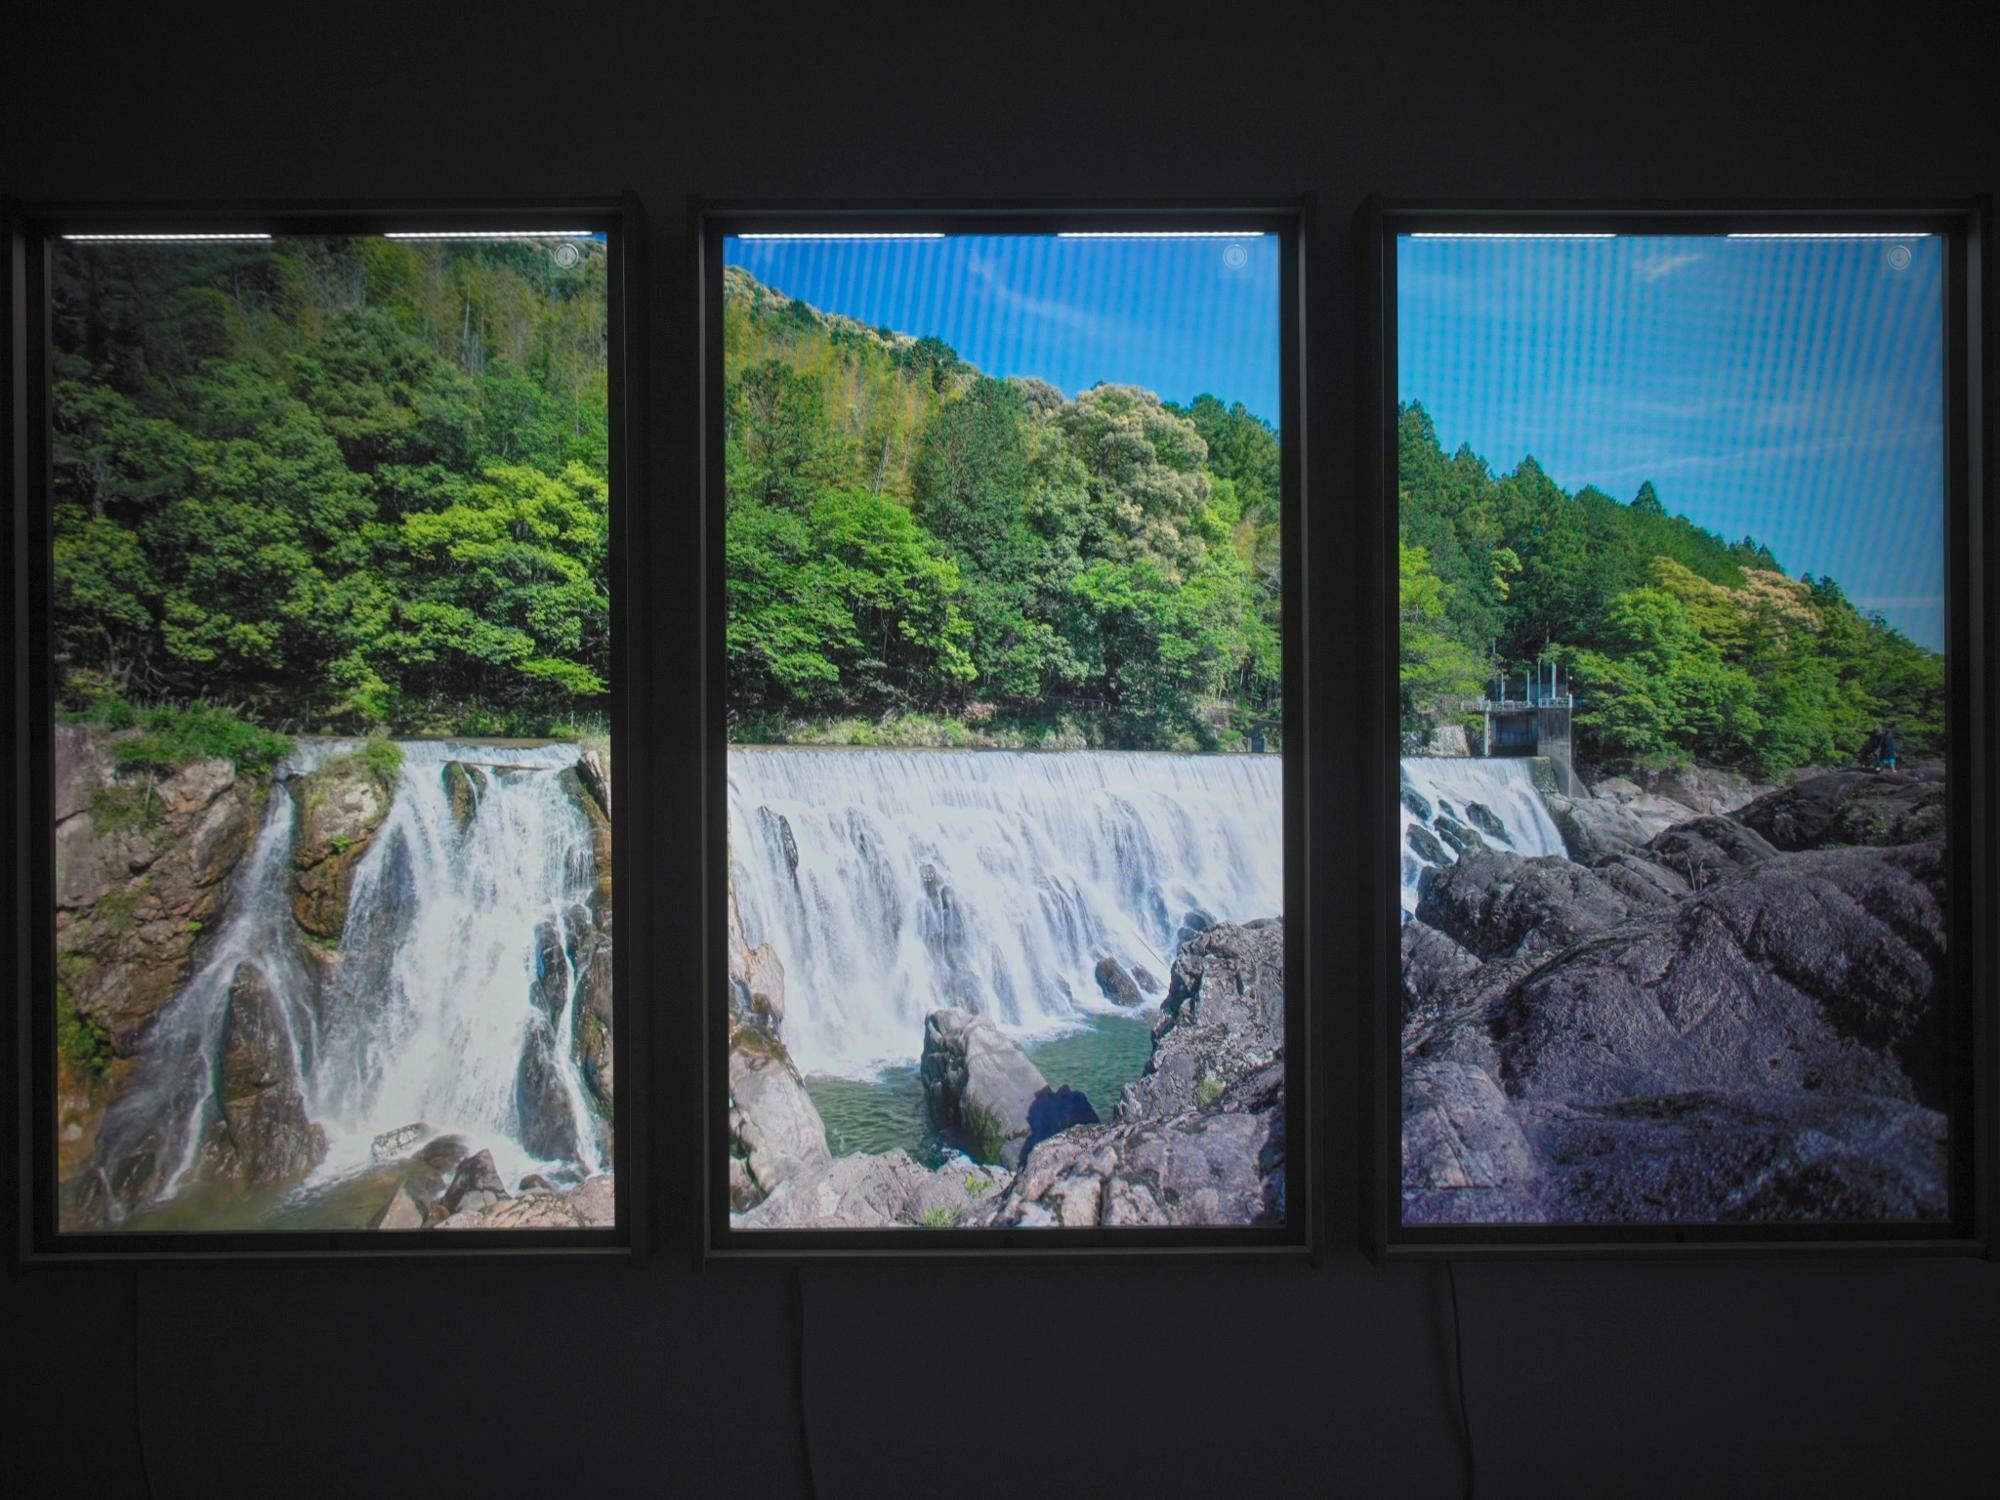 新城のナイアガラと言われる長篠堰堤（ながしのえんてい）を見に行った時の風景。滝のマイナスイオンを感じながら撮影しました